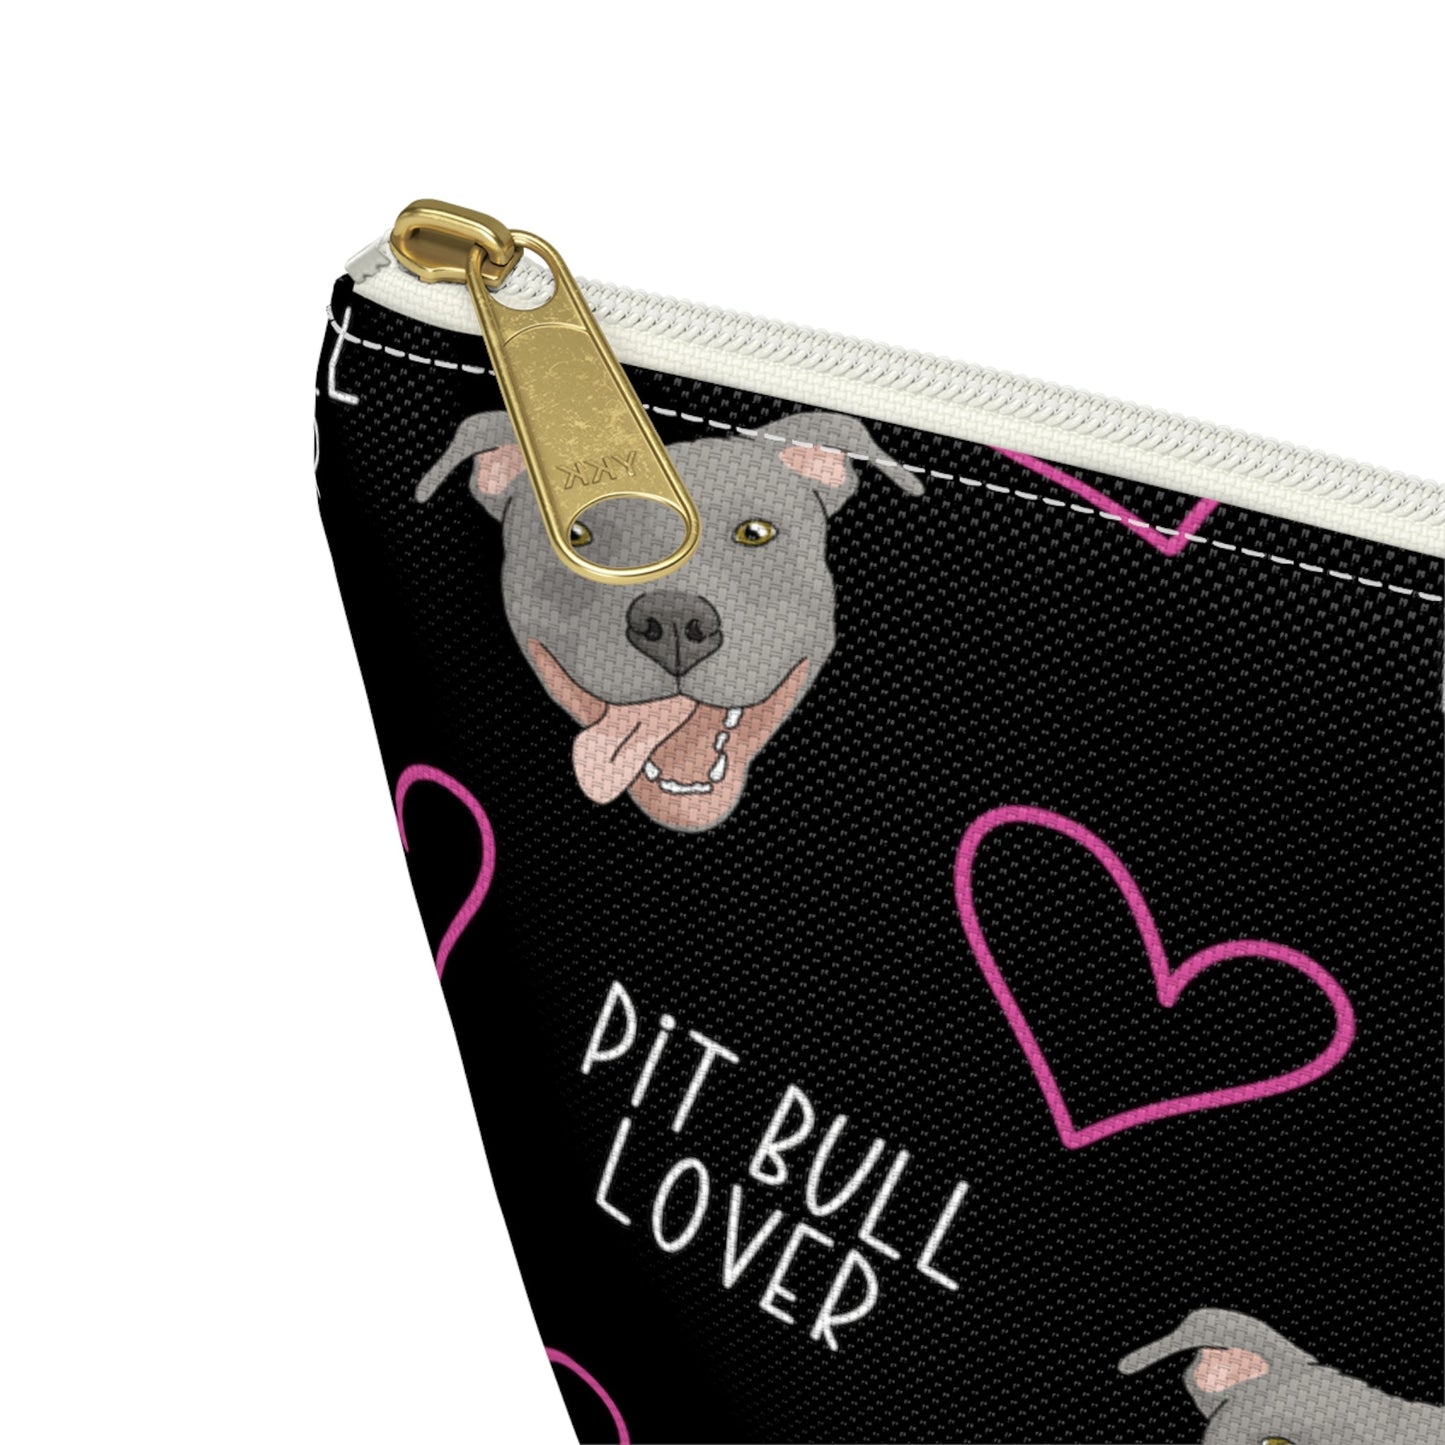 Pit Bull Lover | Pencil Case - Detezi Designs-43846251466810341948